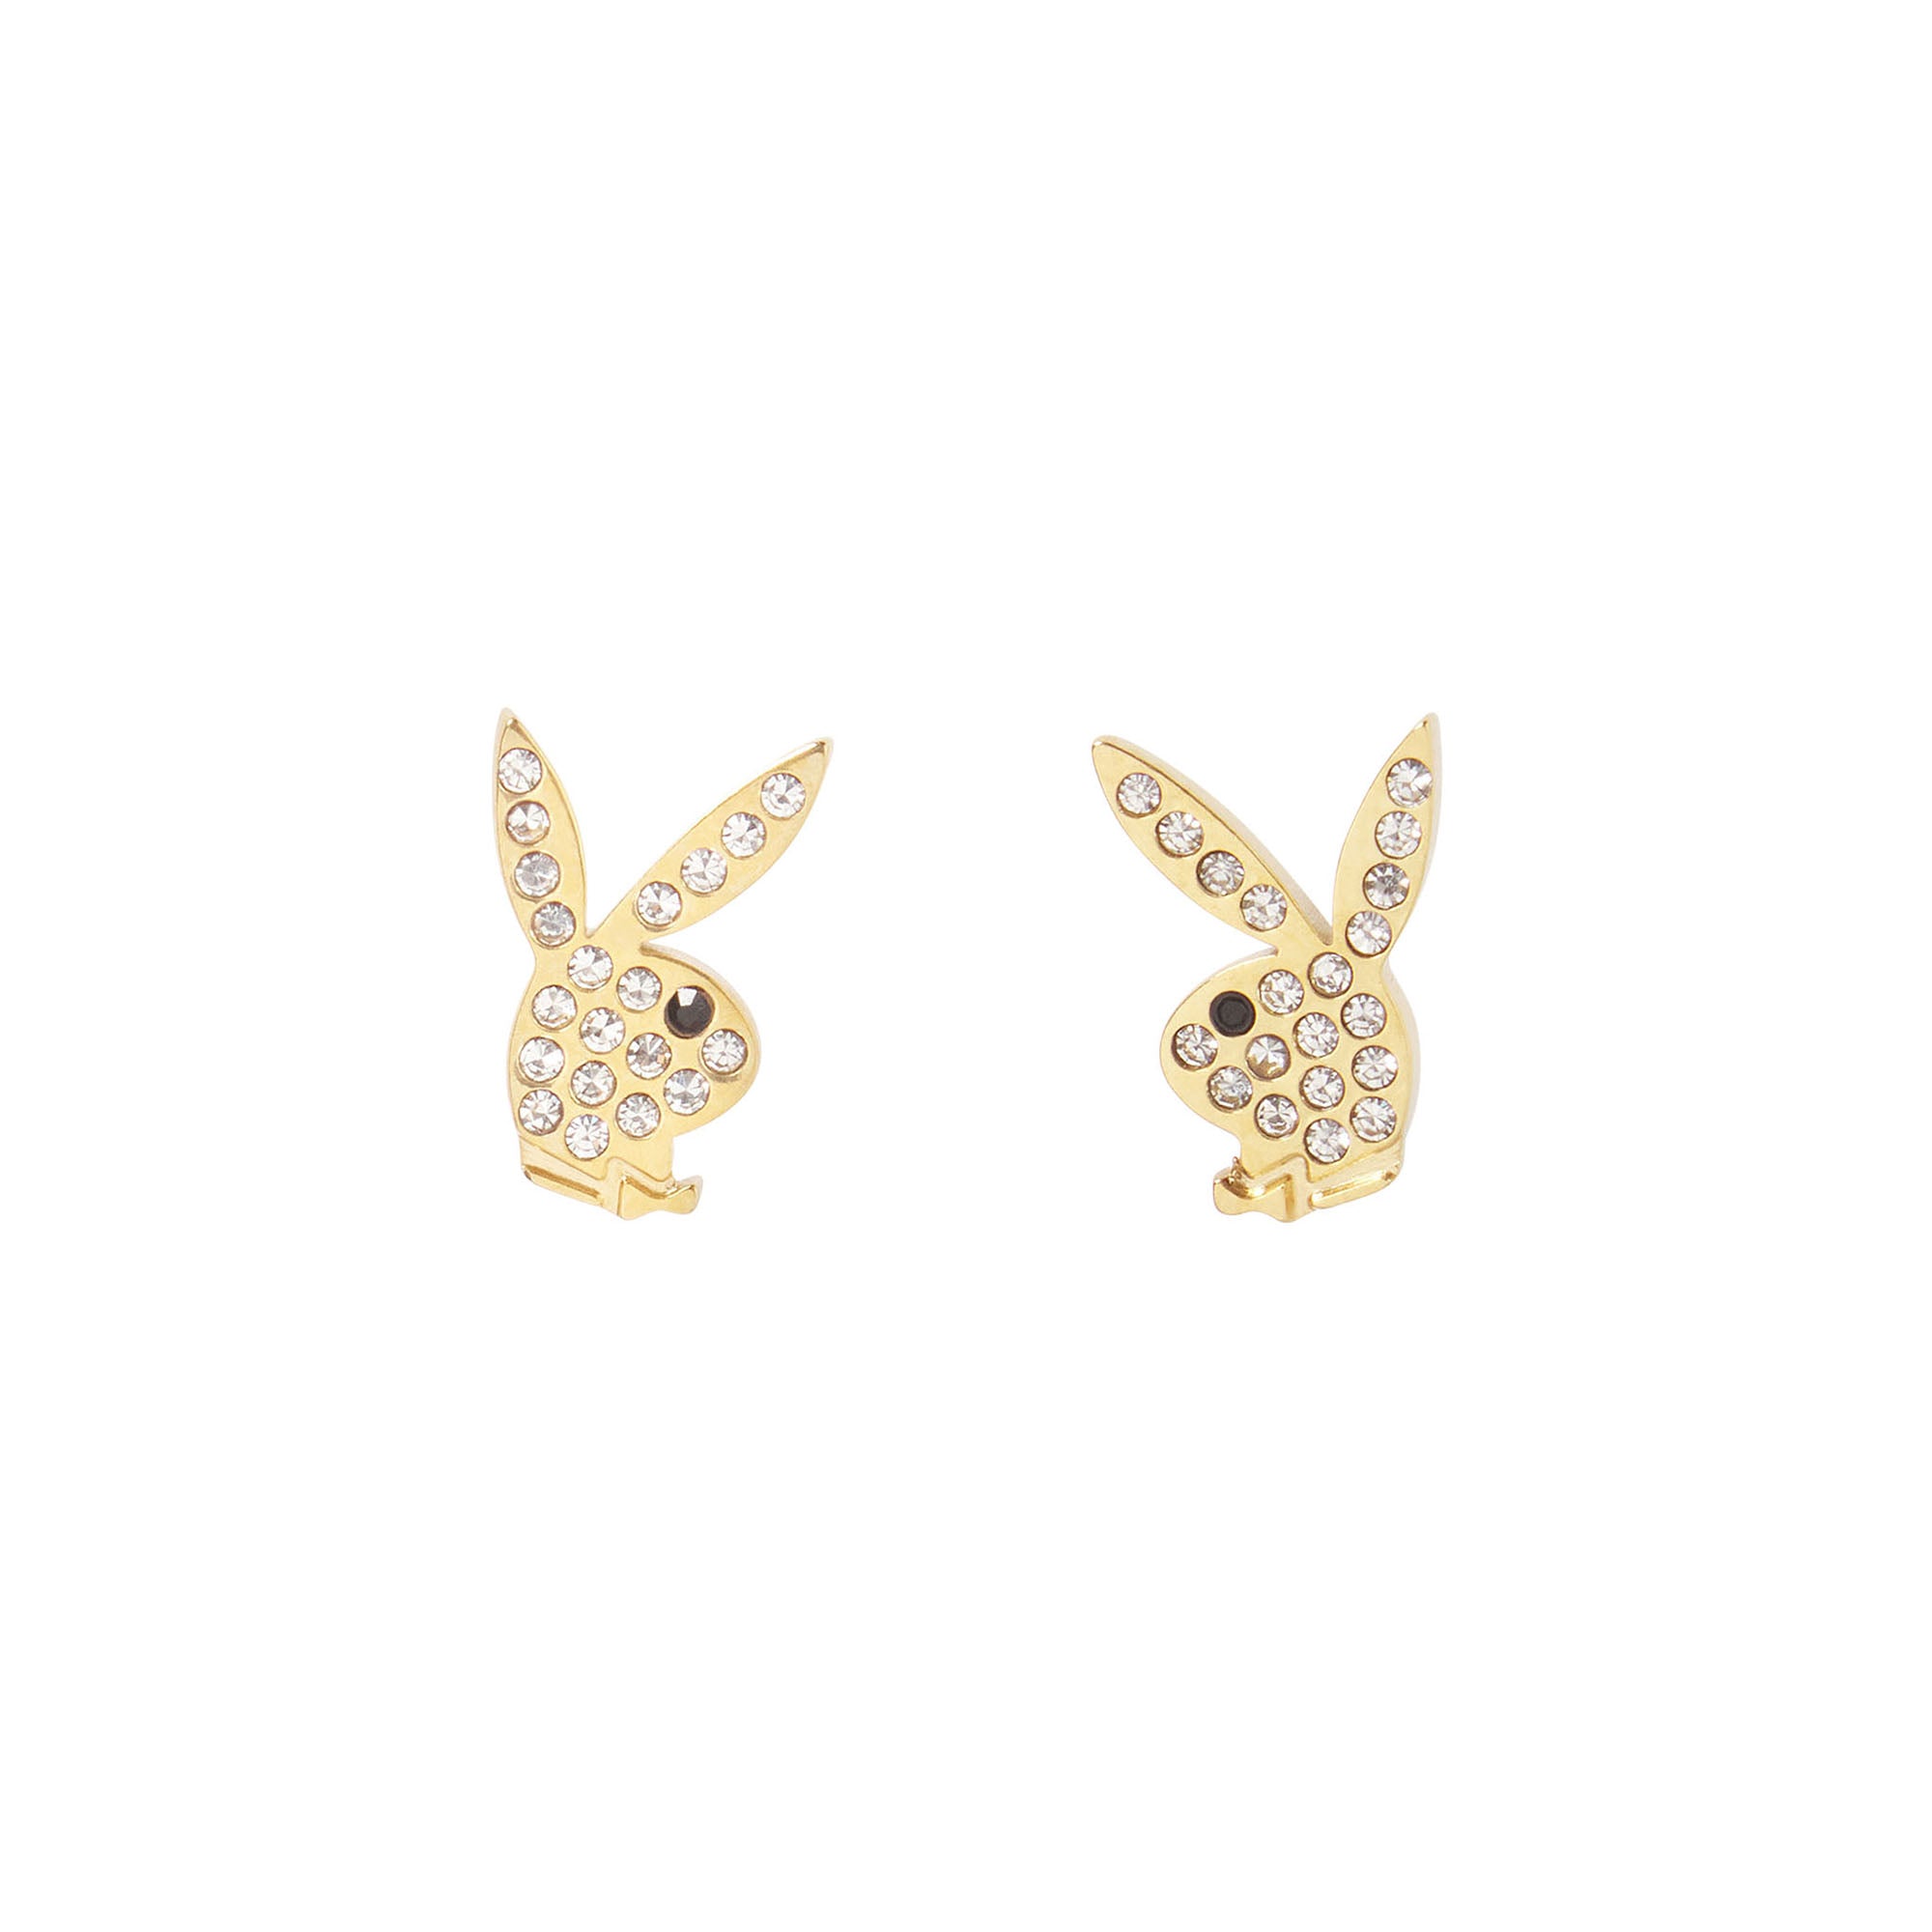 Rabbit Head Pave Stud Earrings